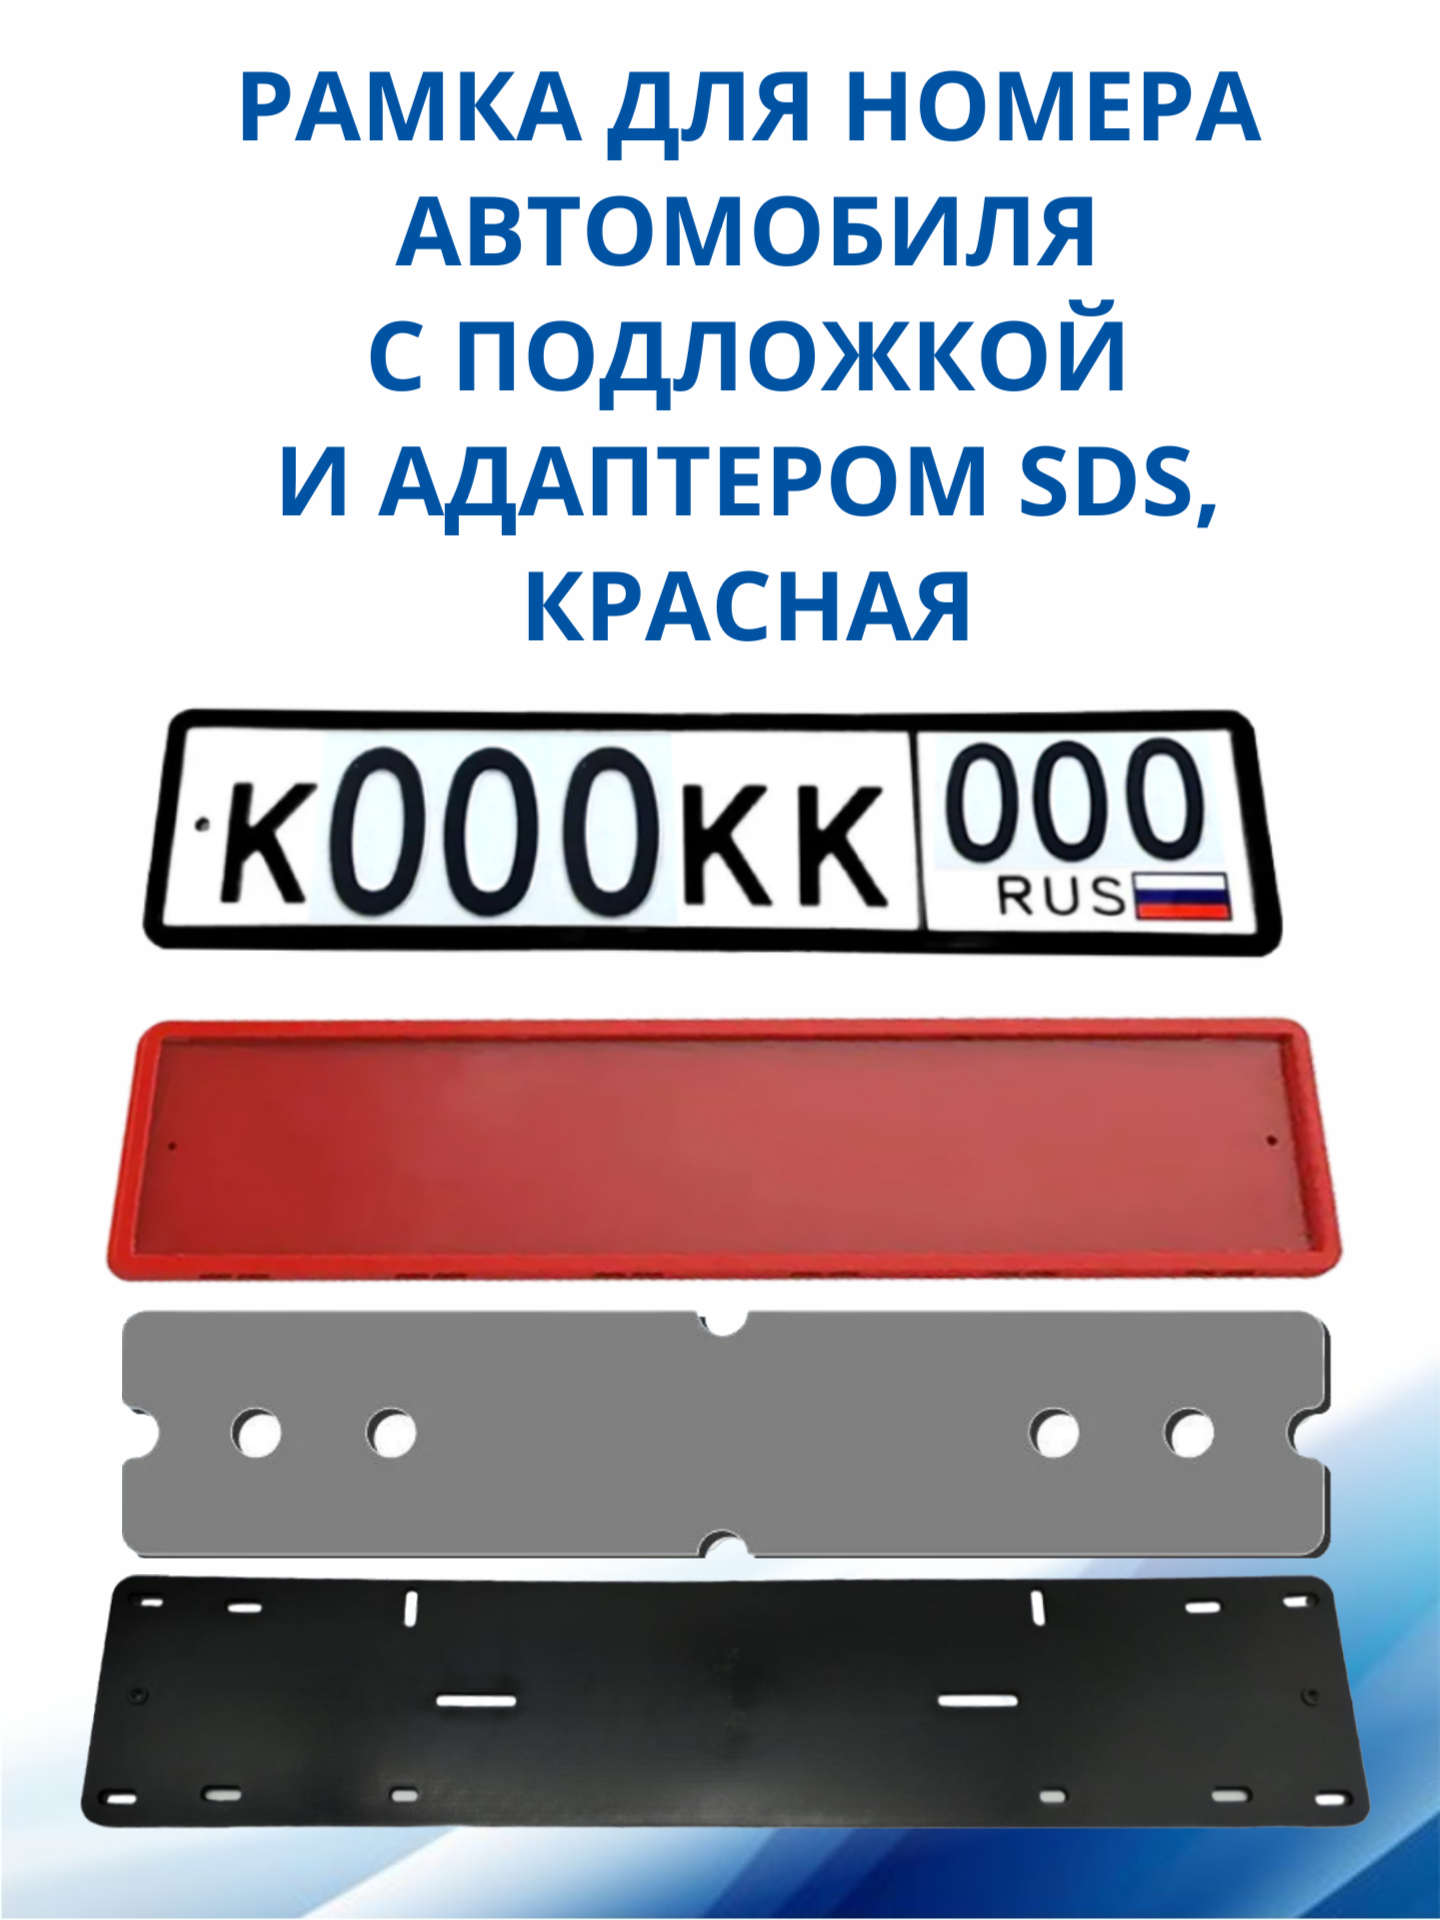 SDS / Рамка для номера автомобиля Красная силикон с подложкой шумоизоляционной и адаптером 1 шт